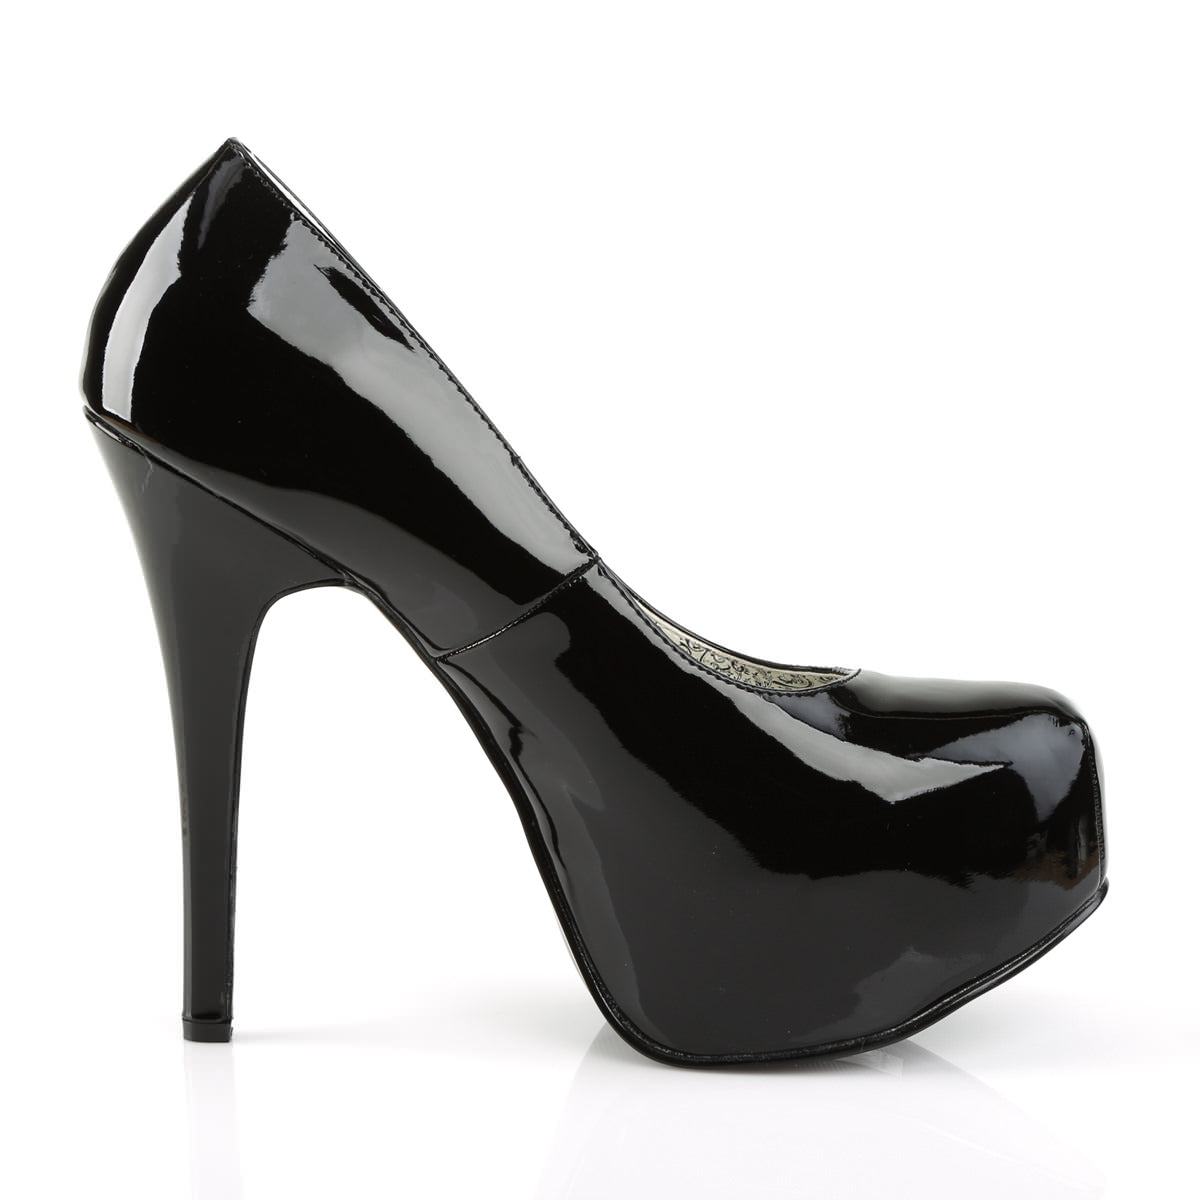 Black Patent Wide Width Pump 5 Inch High Heels For Men | TEEZE-06W ...